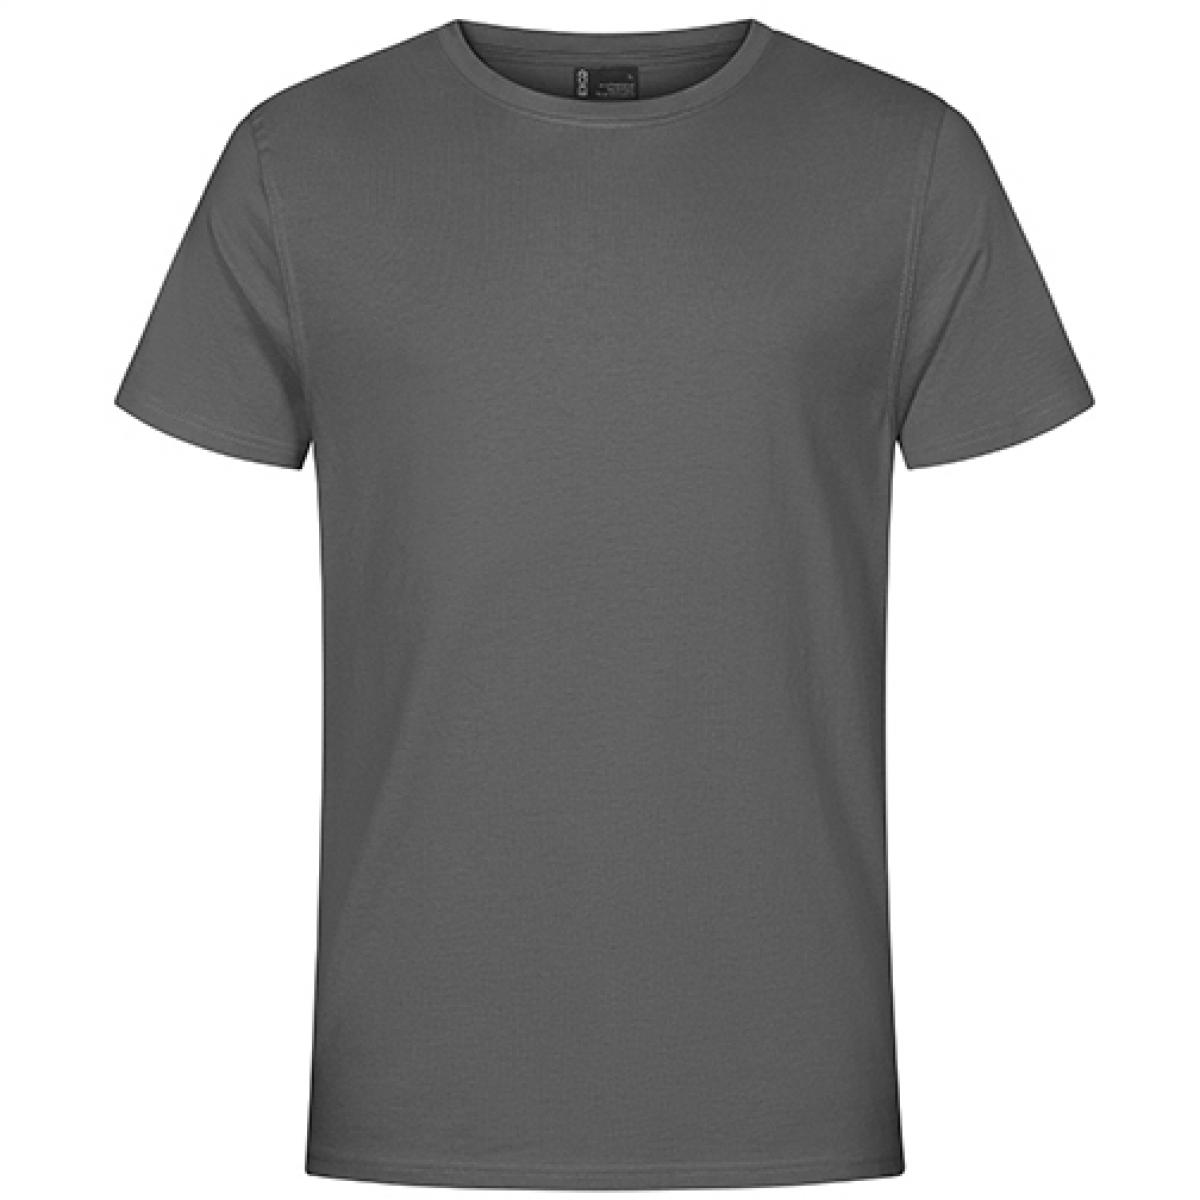 Hersteller: EXCD by Promodoro Herstellernummer: 3077 Artikelbezeichnung: Herren T-Shirt, Single-Jersey Farbe: Steel Grey